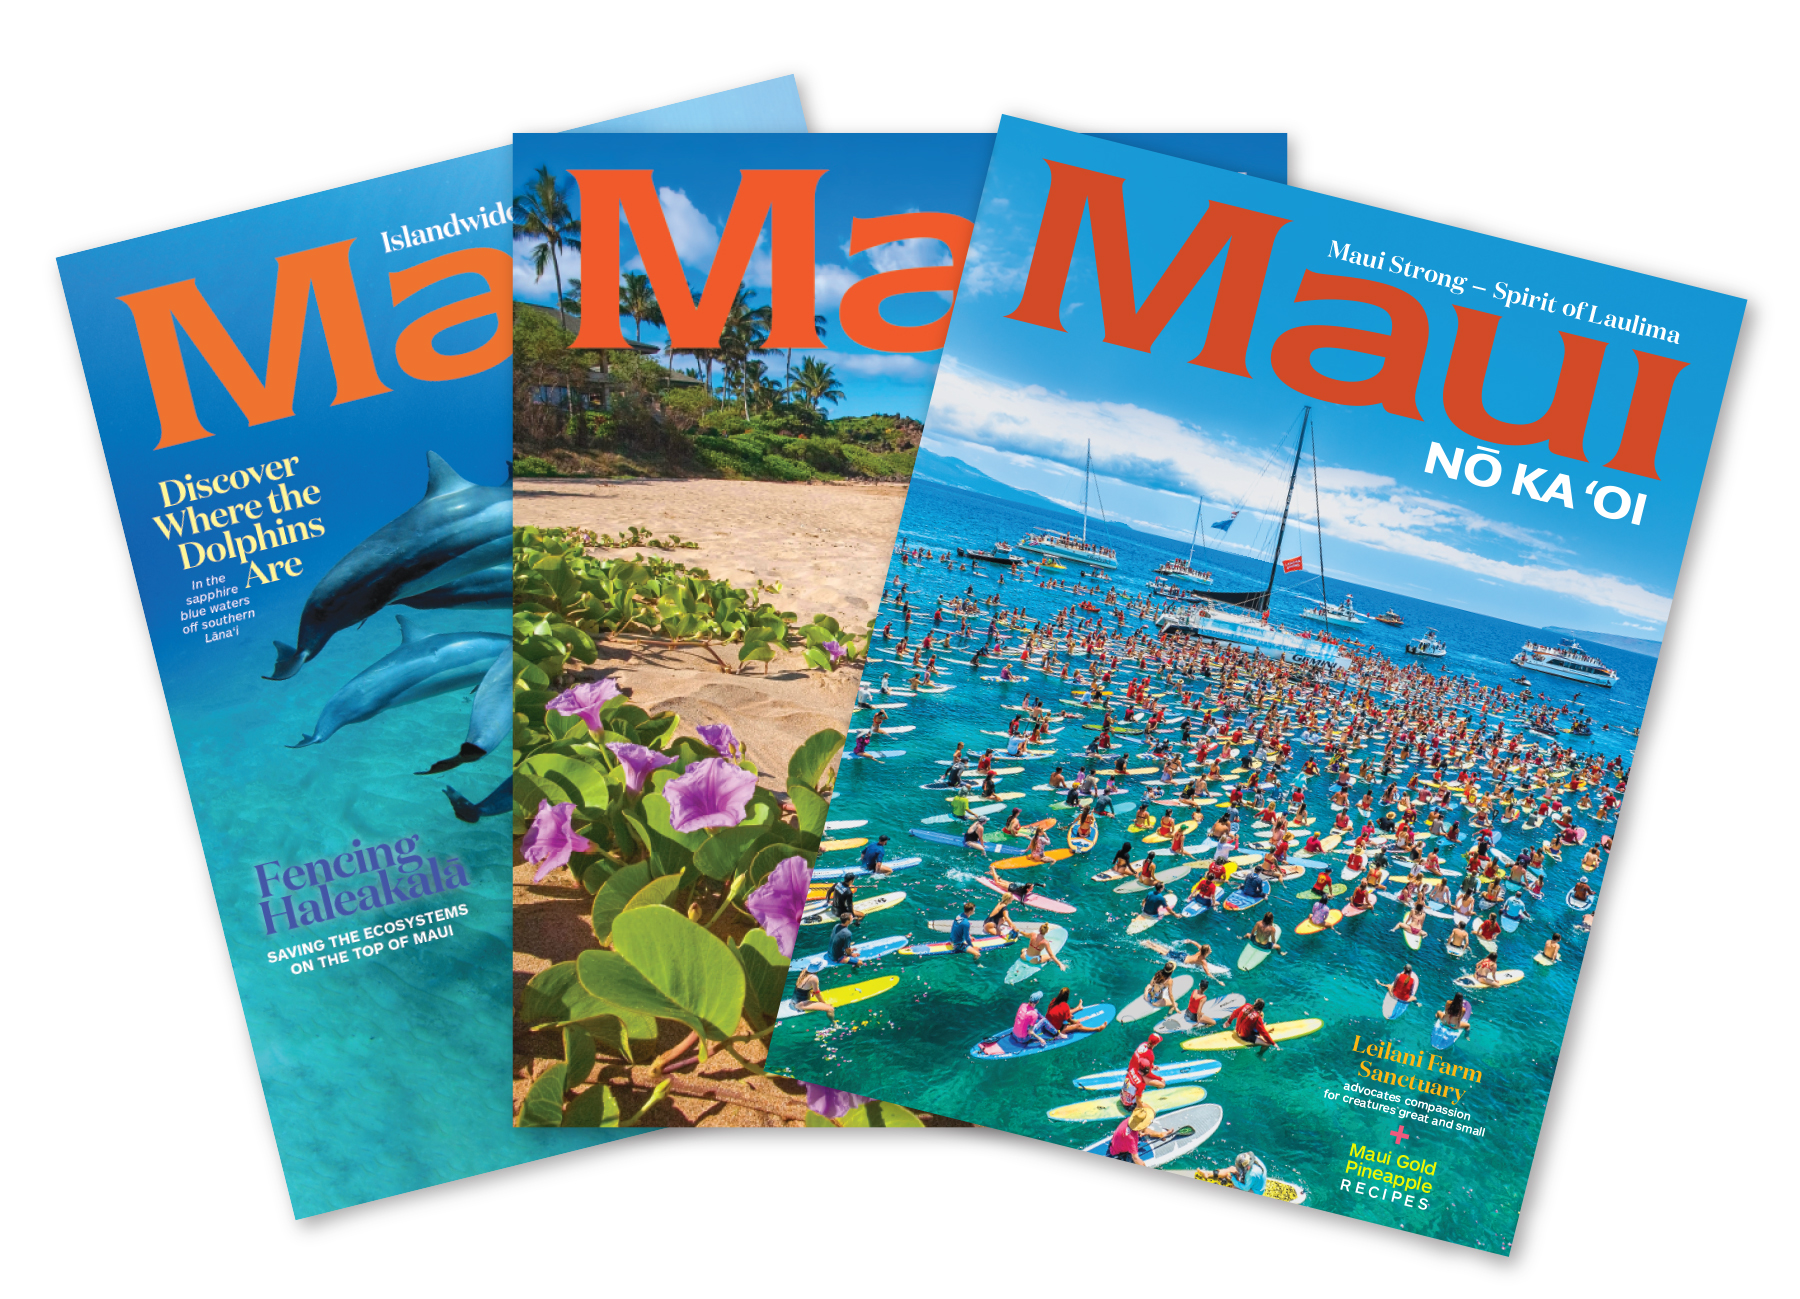 Maui　Subscription　No　Oi　Ka　'Oi　Magazine　Magazine　Maui　Nō　Ka